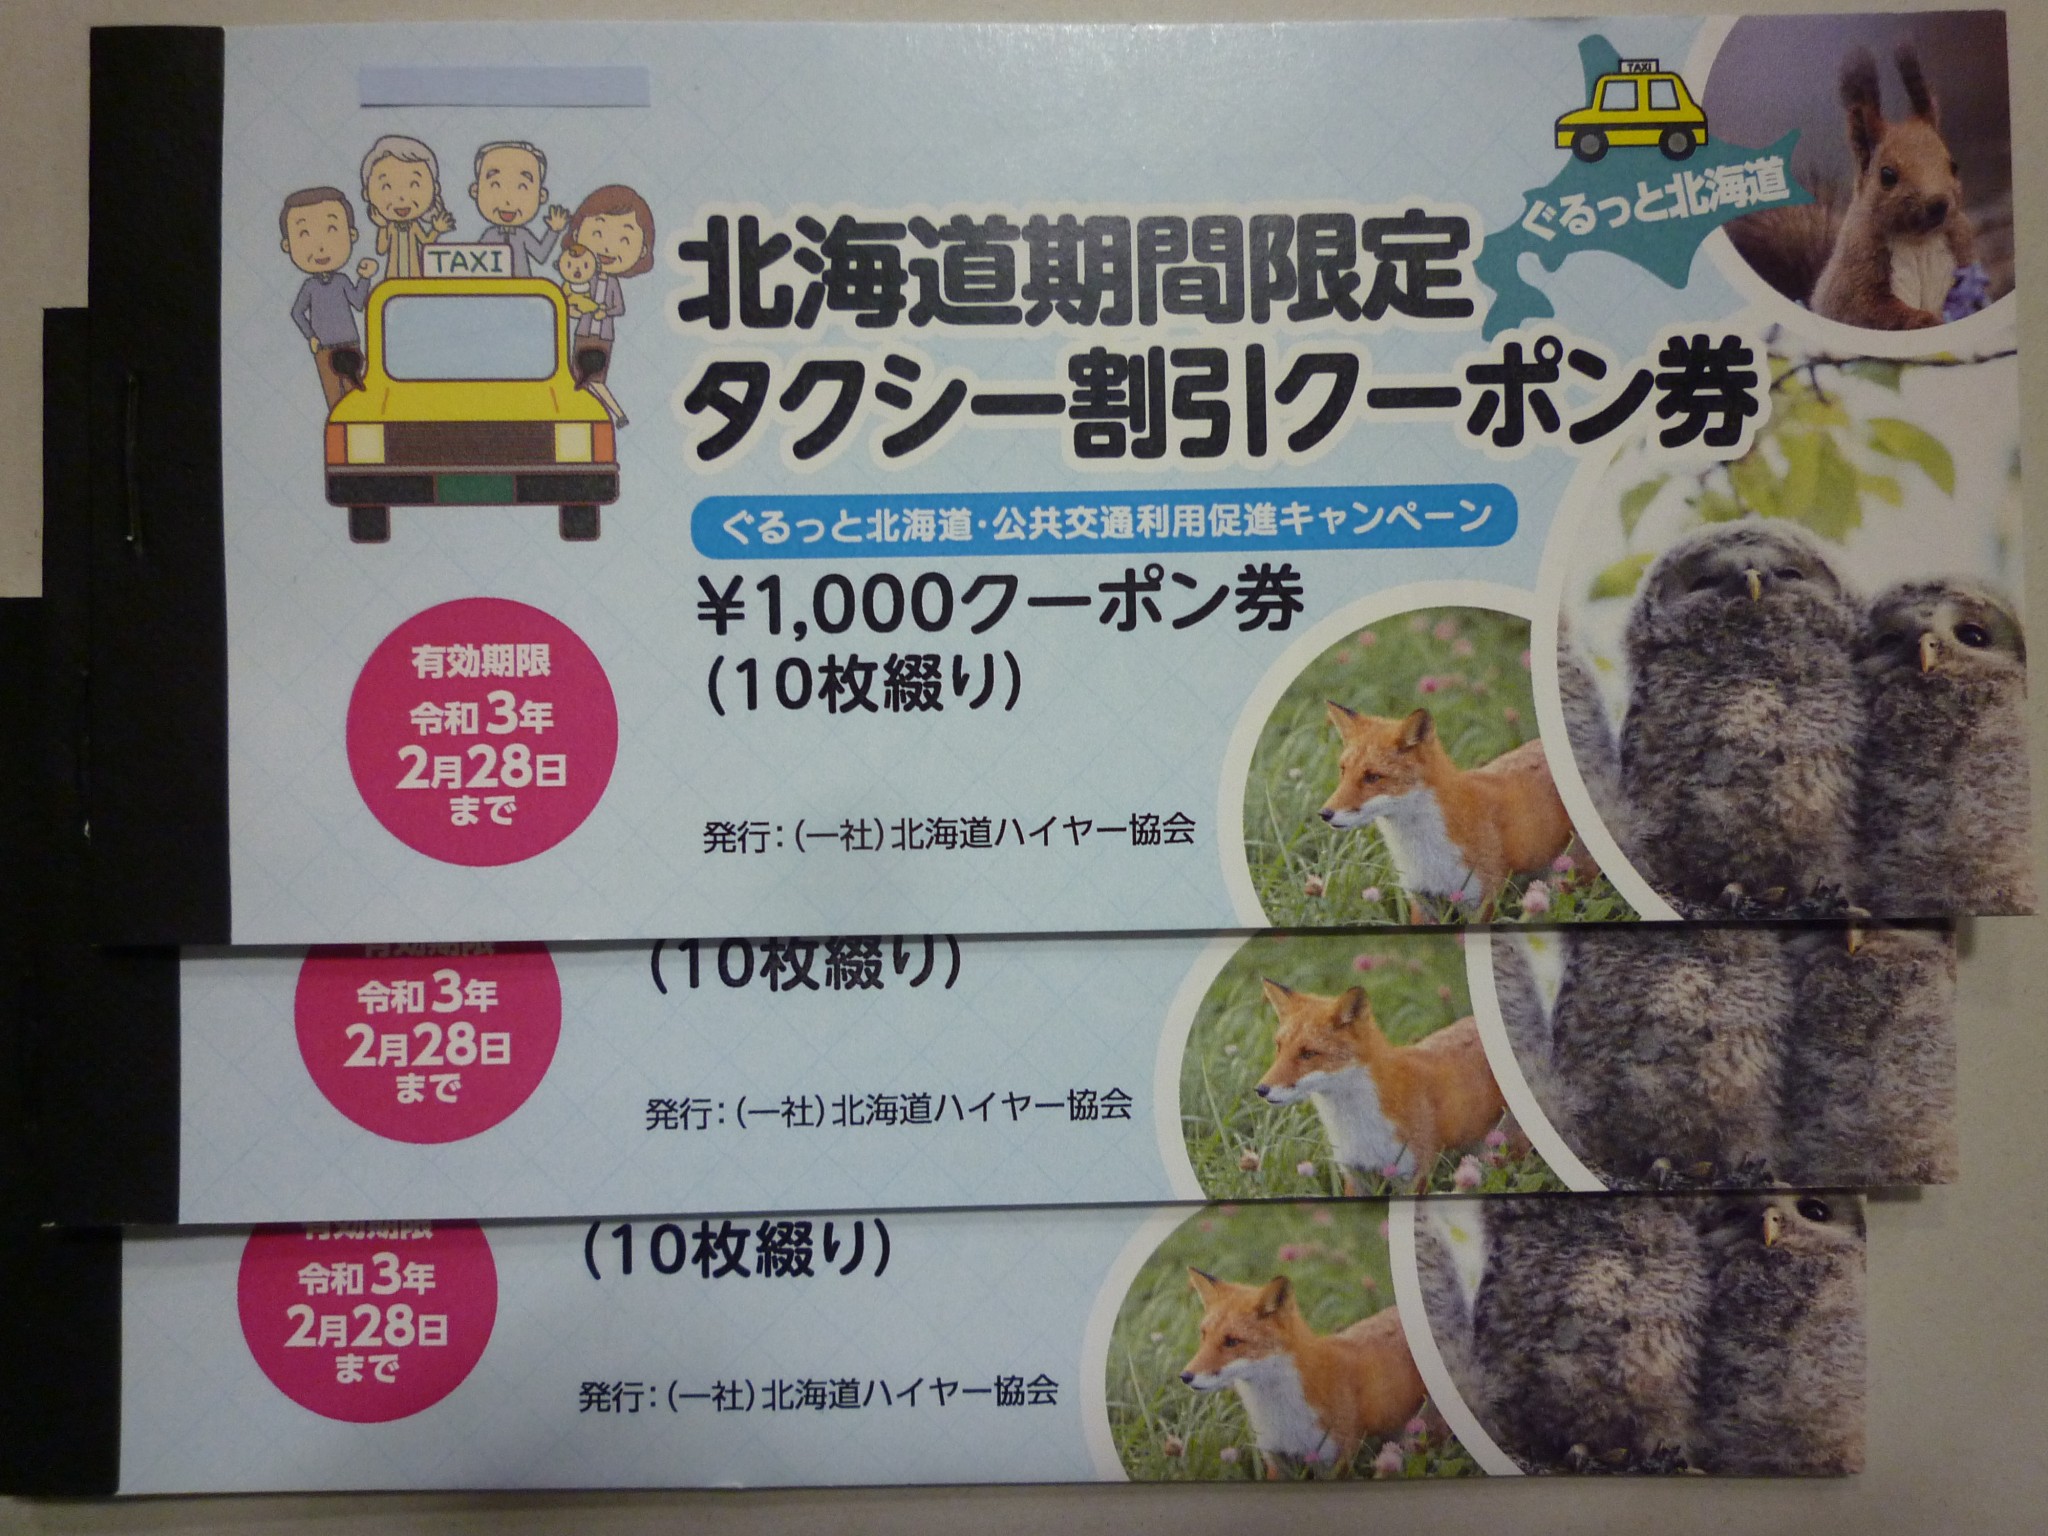 タクシー割引クーポン券 | 金券・切手・コインの買取と販売 | 札幌の金券ショップ | チェリースタンプ